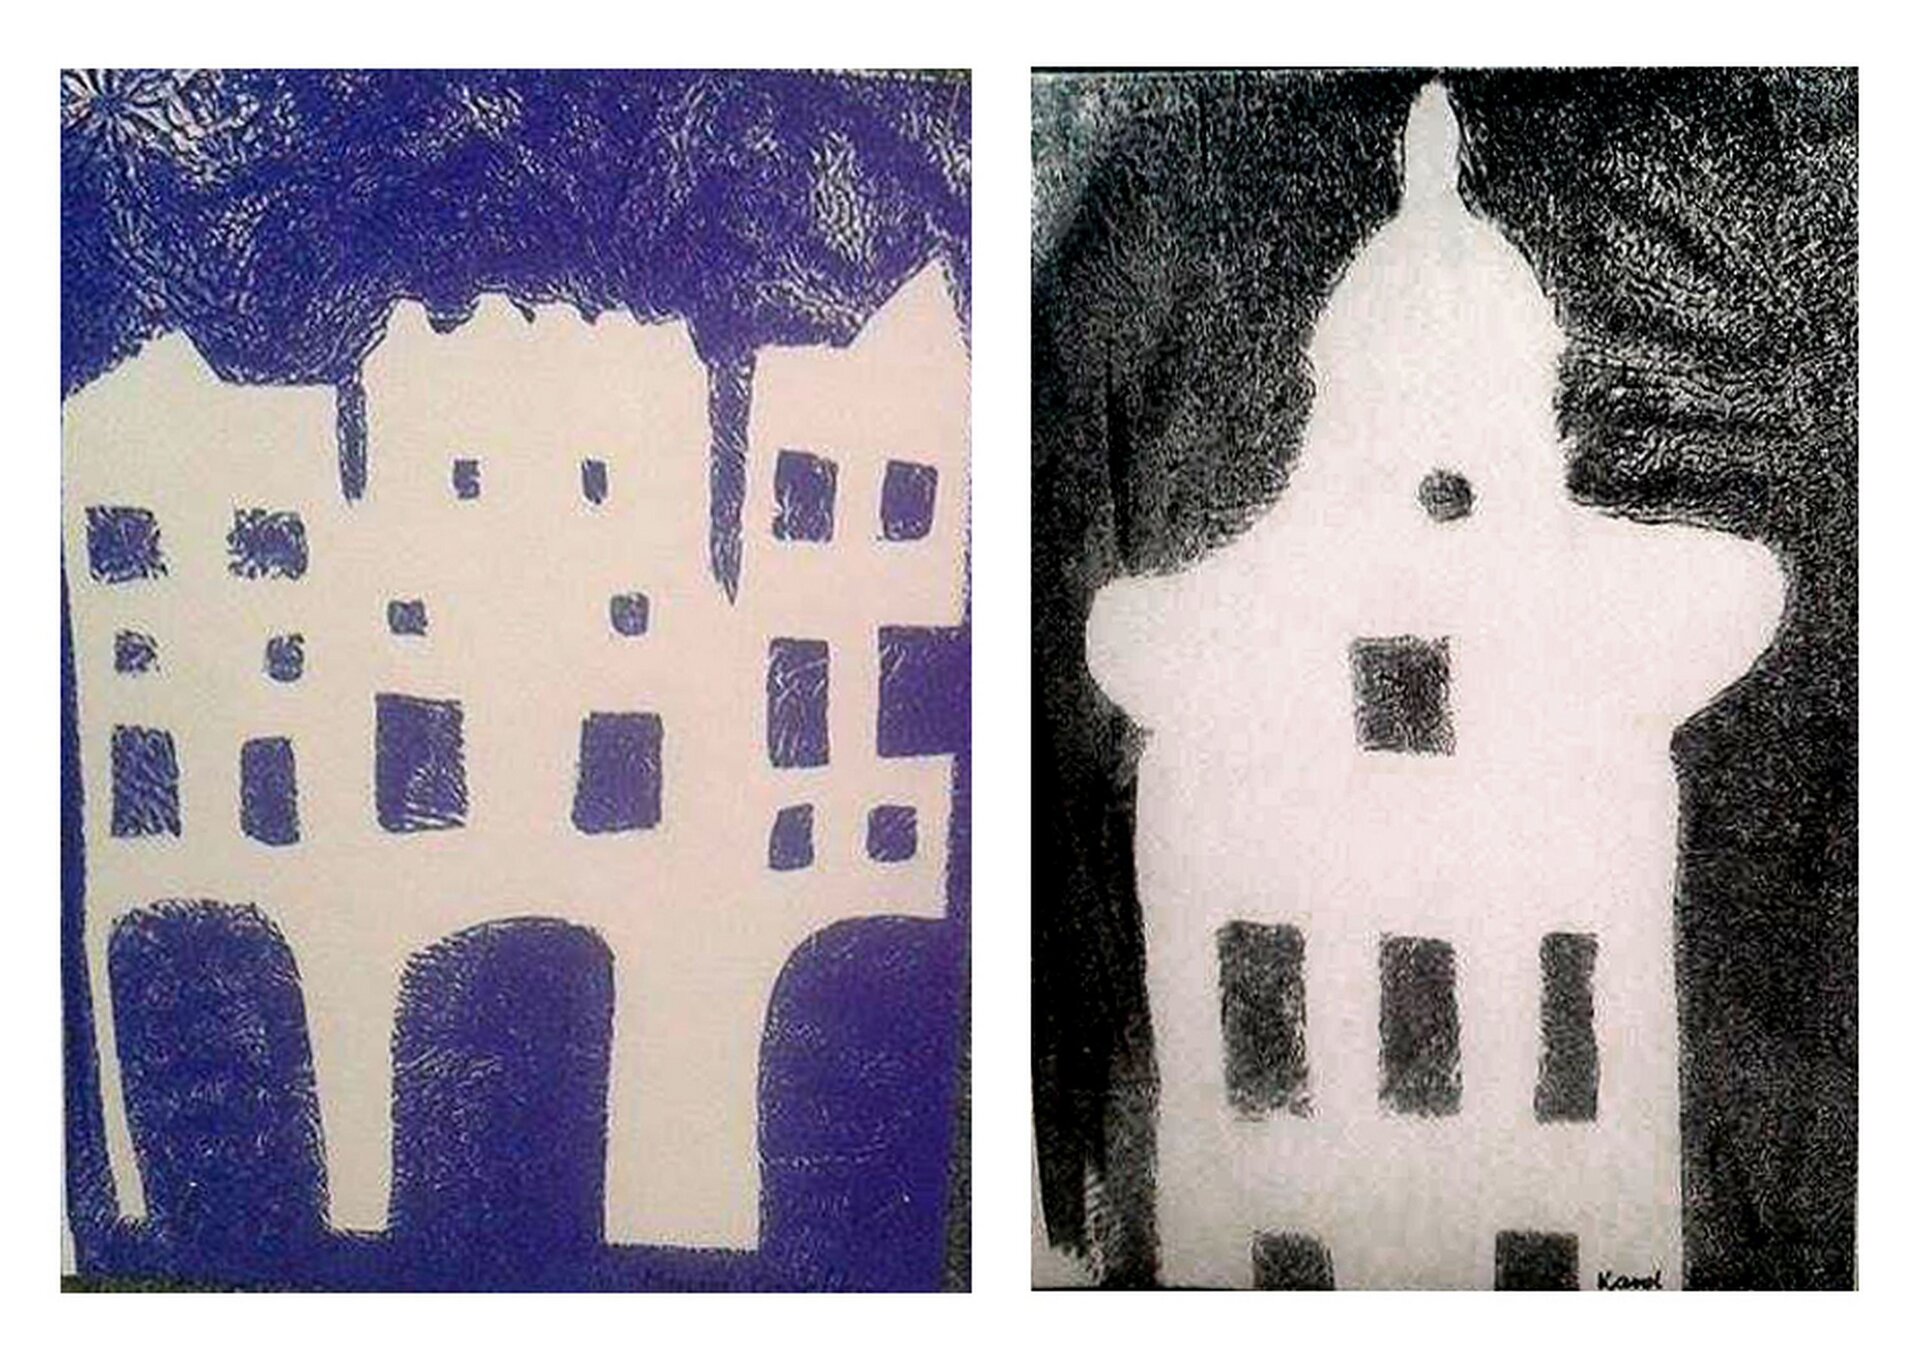 Ilustracja przedstawia dwie kalkografie: jedna jest w kolorze niebieskim, druga - w czarnym. Pierwsza przedstawia rząd budowli z arkadowym przejściem, druga - wieżę.